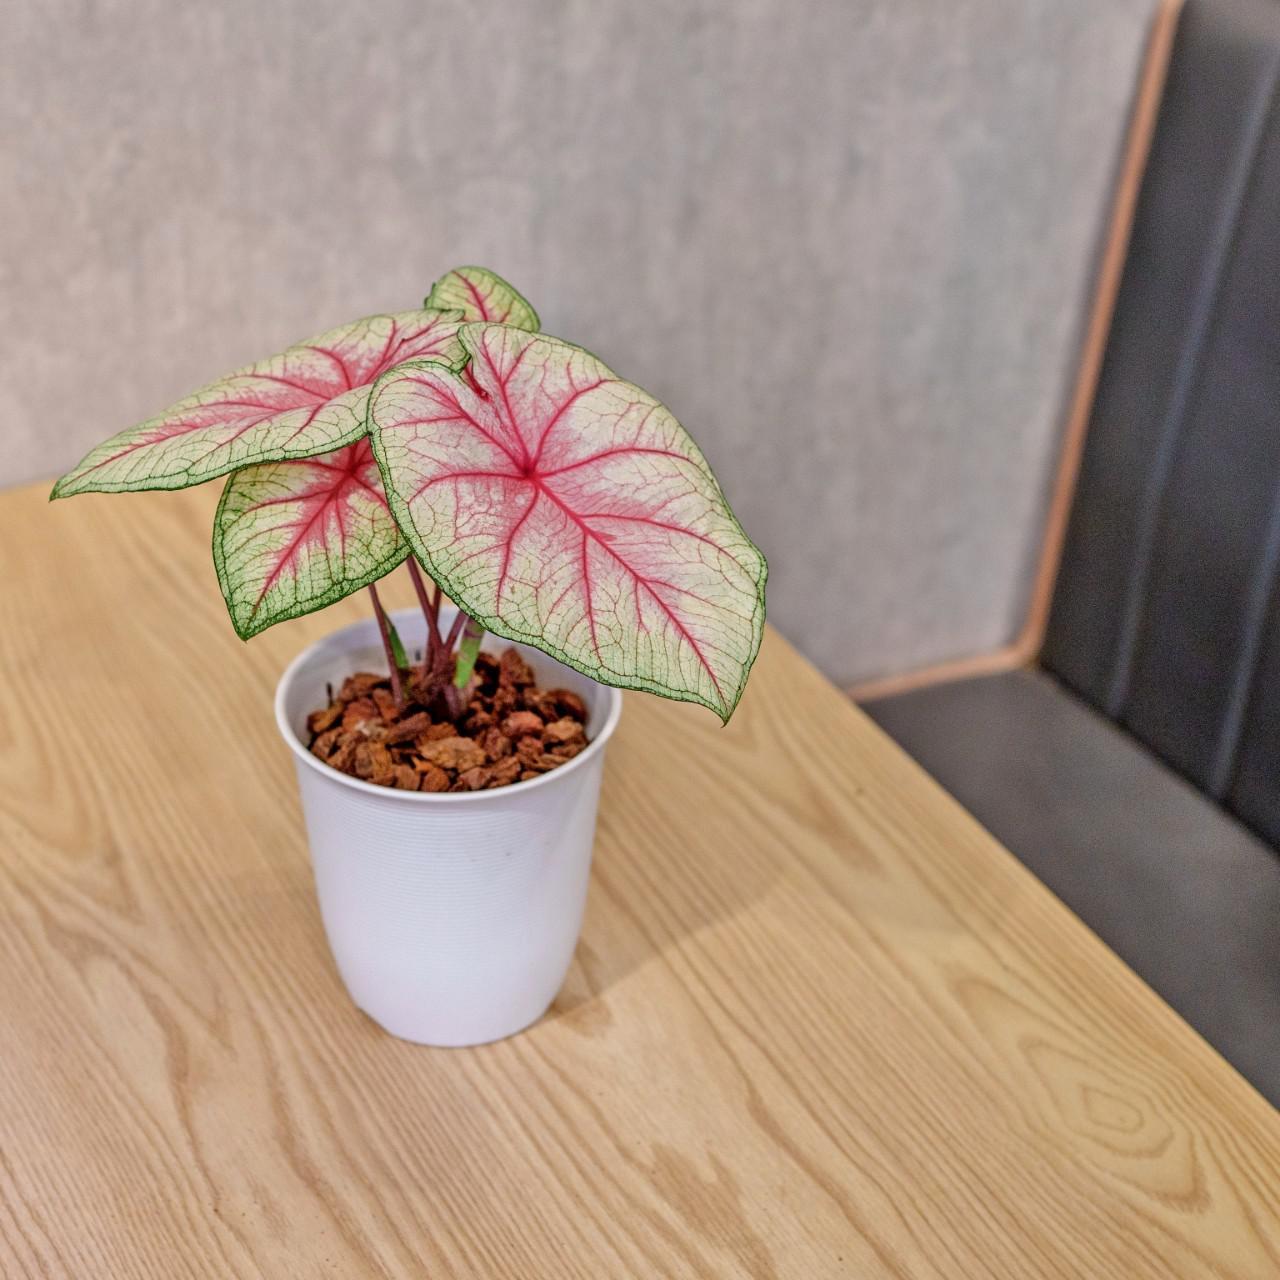 白皇后 彩葉芋 日式塑陶盆 室內植物 觀葉植物 禮物 盆栽 辦公室小物